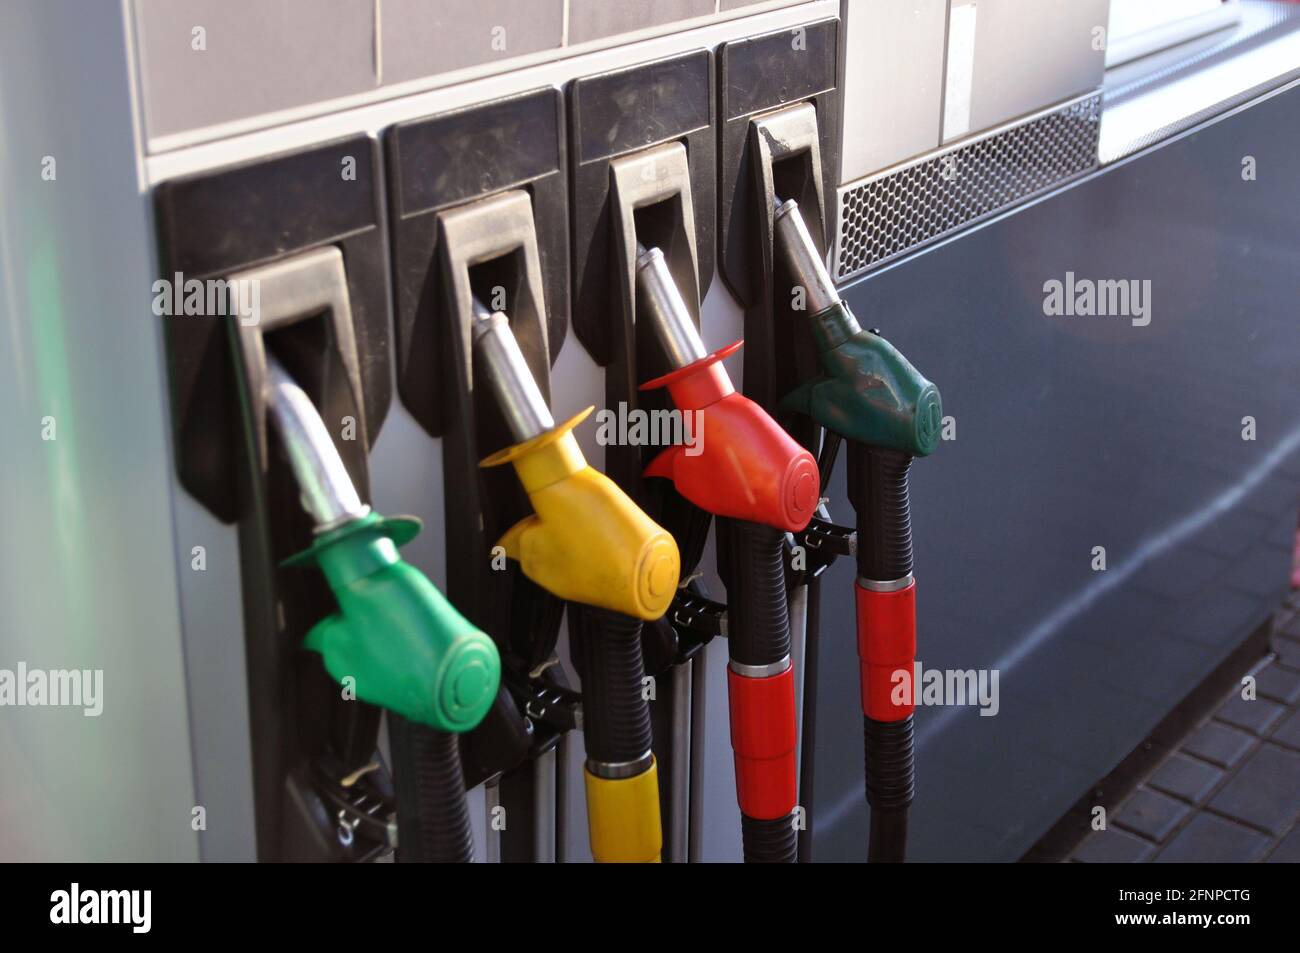 Zapfsäule an einer Tankstelle. Schläuche mit Dosierpistolen für verschiedene Kraftstoffarten. Stockfoto